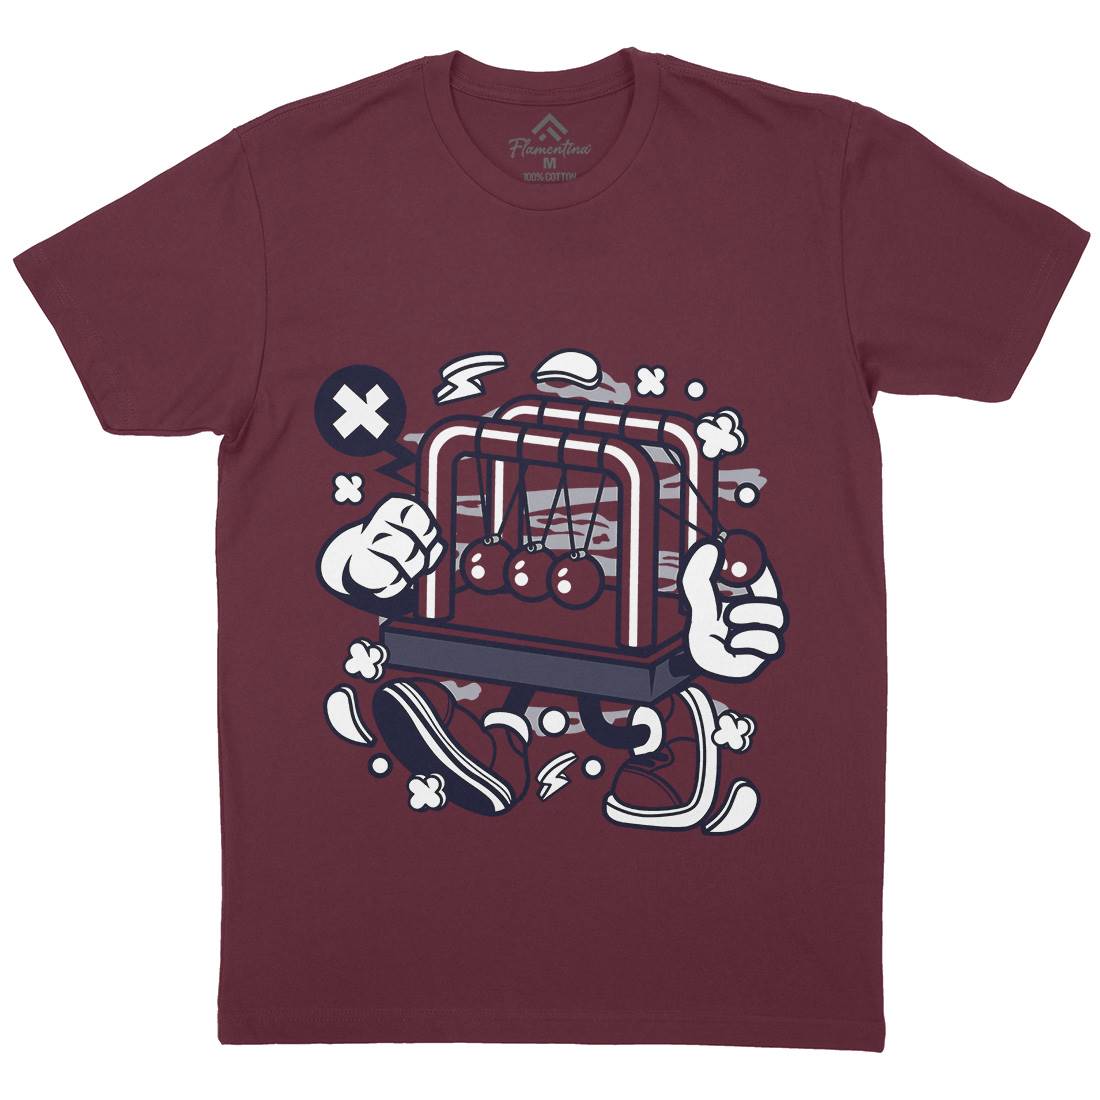 Cradle Balance Mens Crew Neck T-Shirt Retro C083